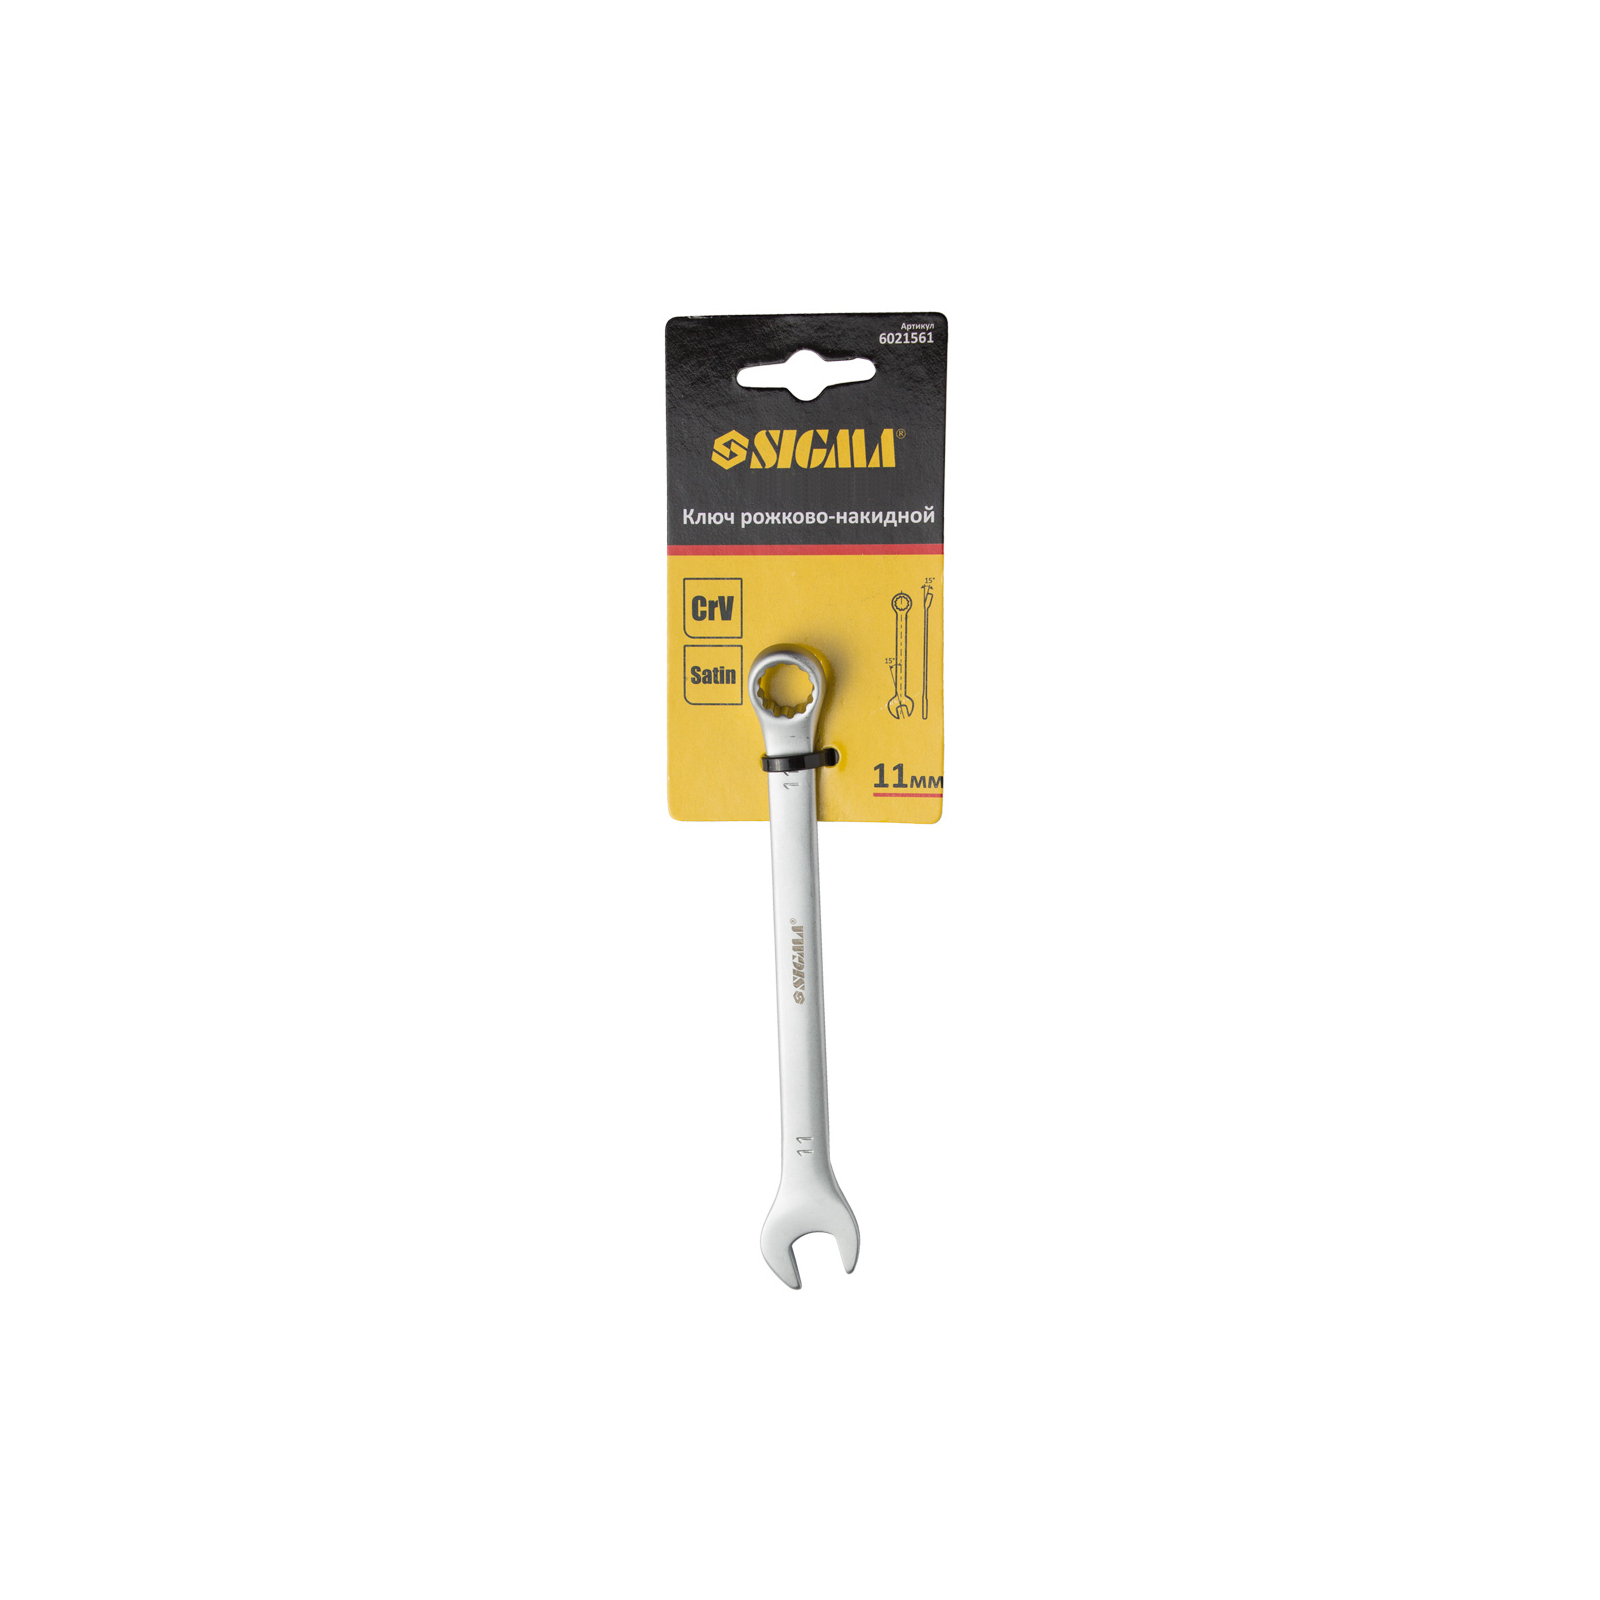 Ключ Sigma рожково-накидной 24мм CrV satine с подвесом (6021691) изображение 4